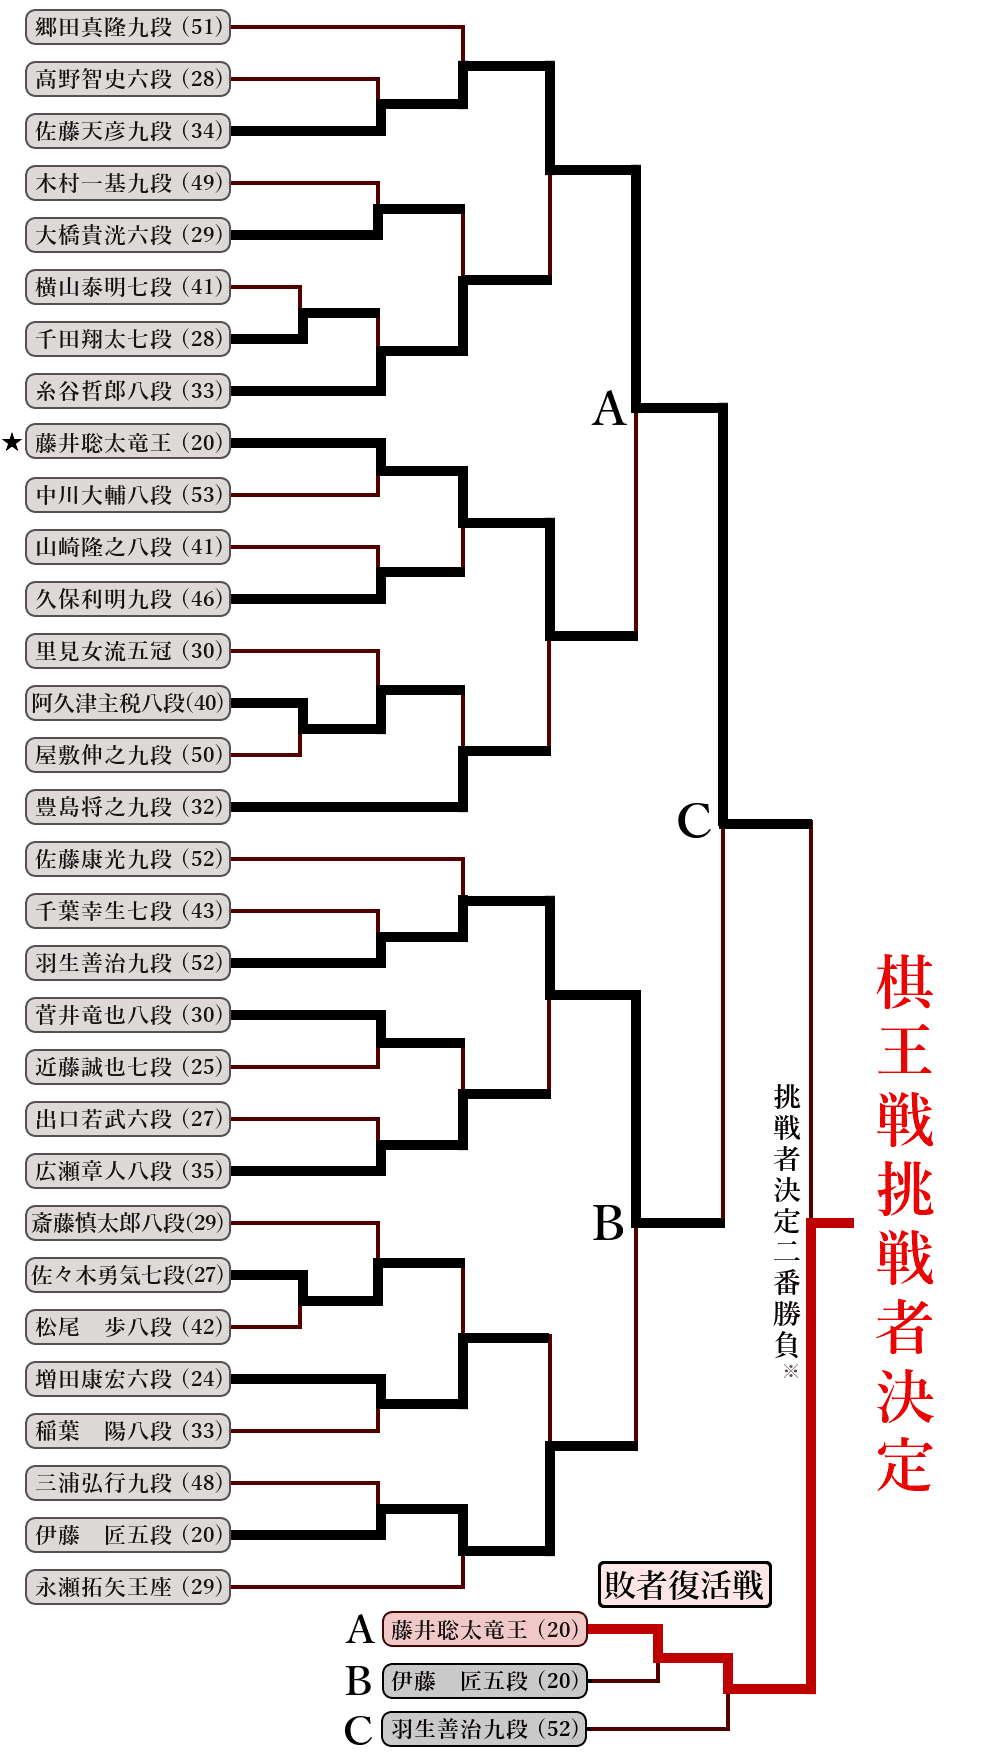 第48期棋王戦挑戦者決定トーナメント表